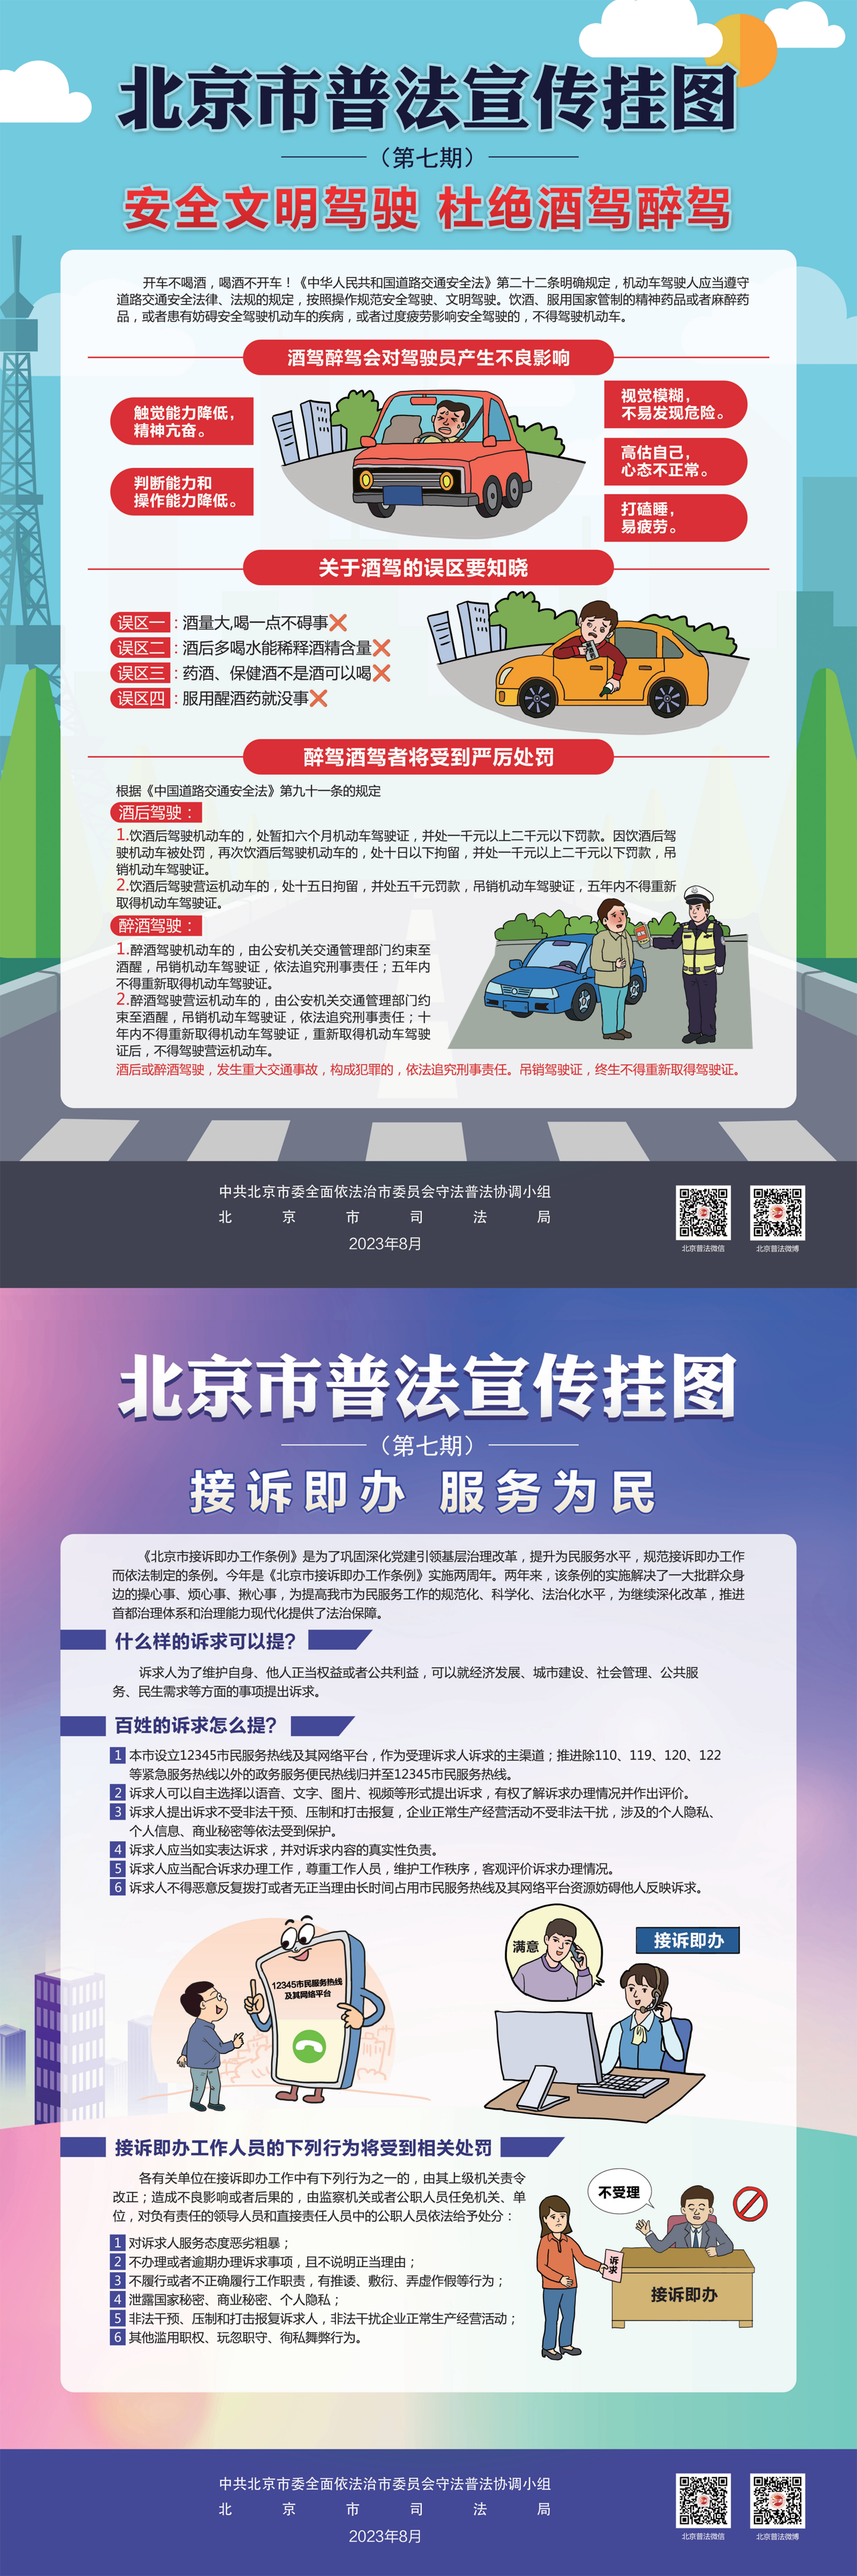 北京市普法宣传挂图第七期